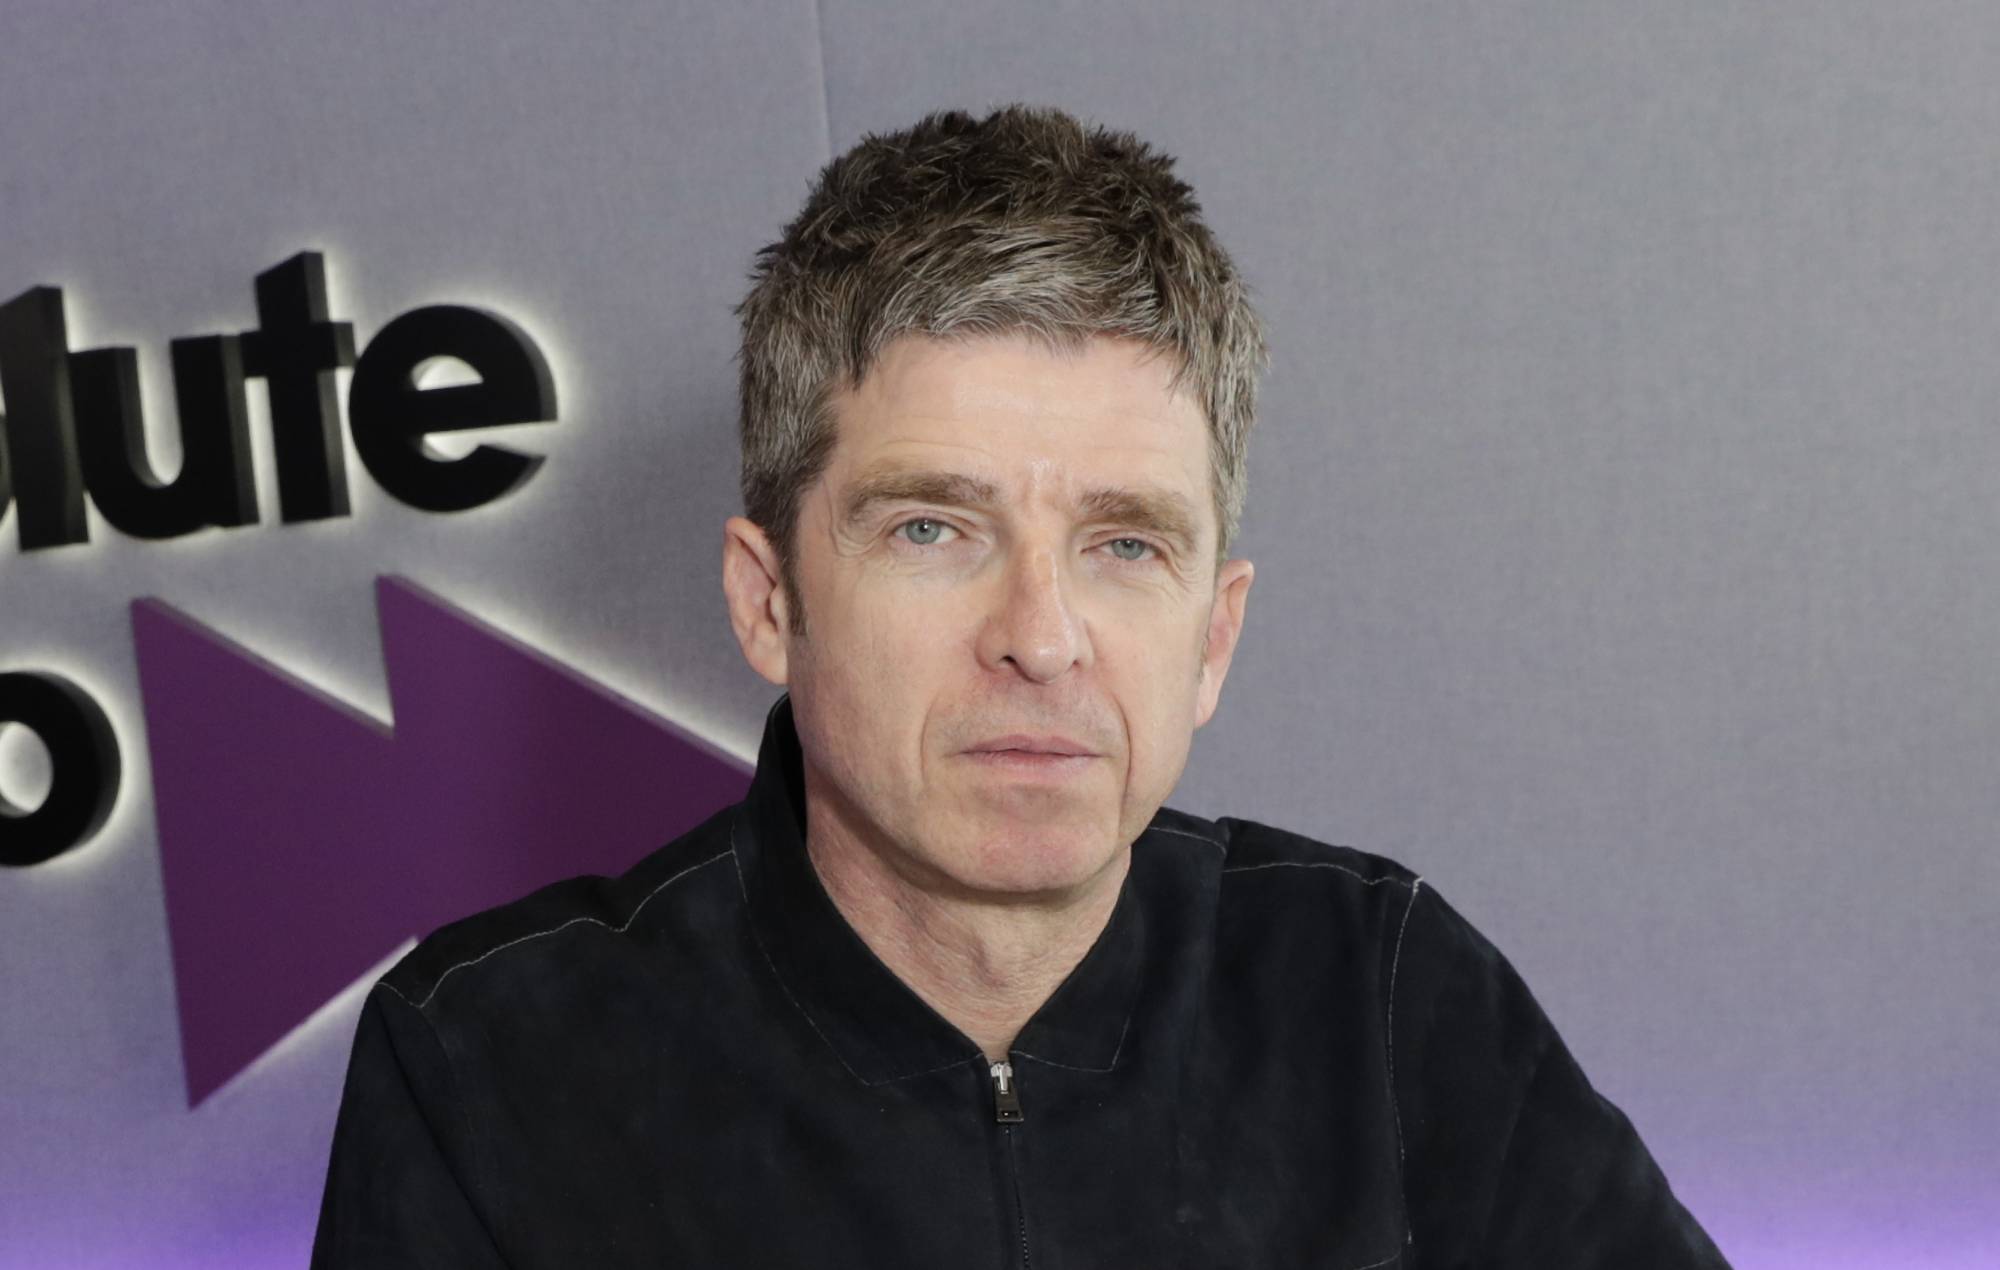 Noel Gallagher dice que está considerando la posibilidad de vender los derechos de su catálogo antiguo